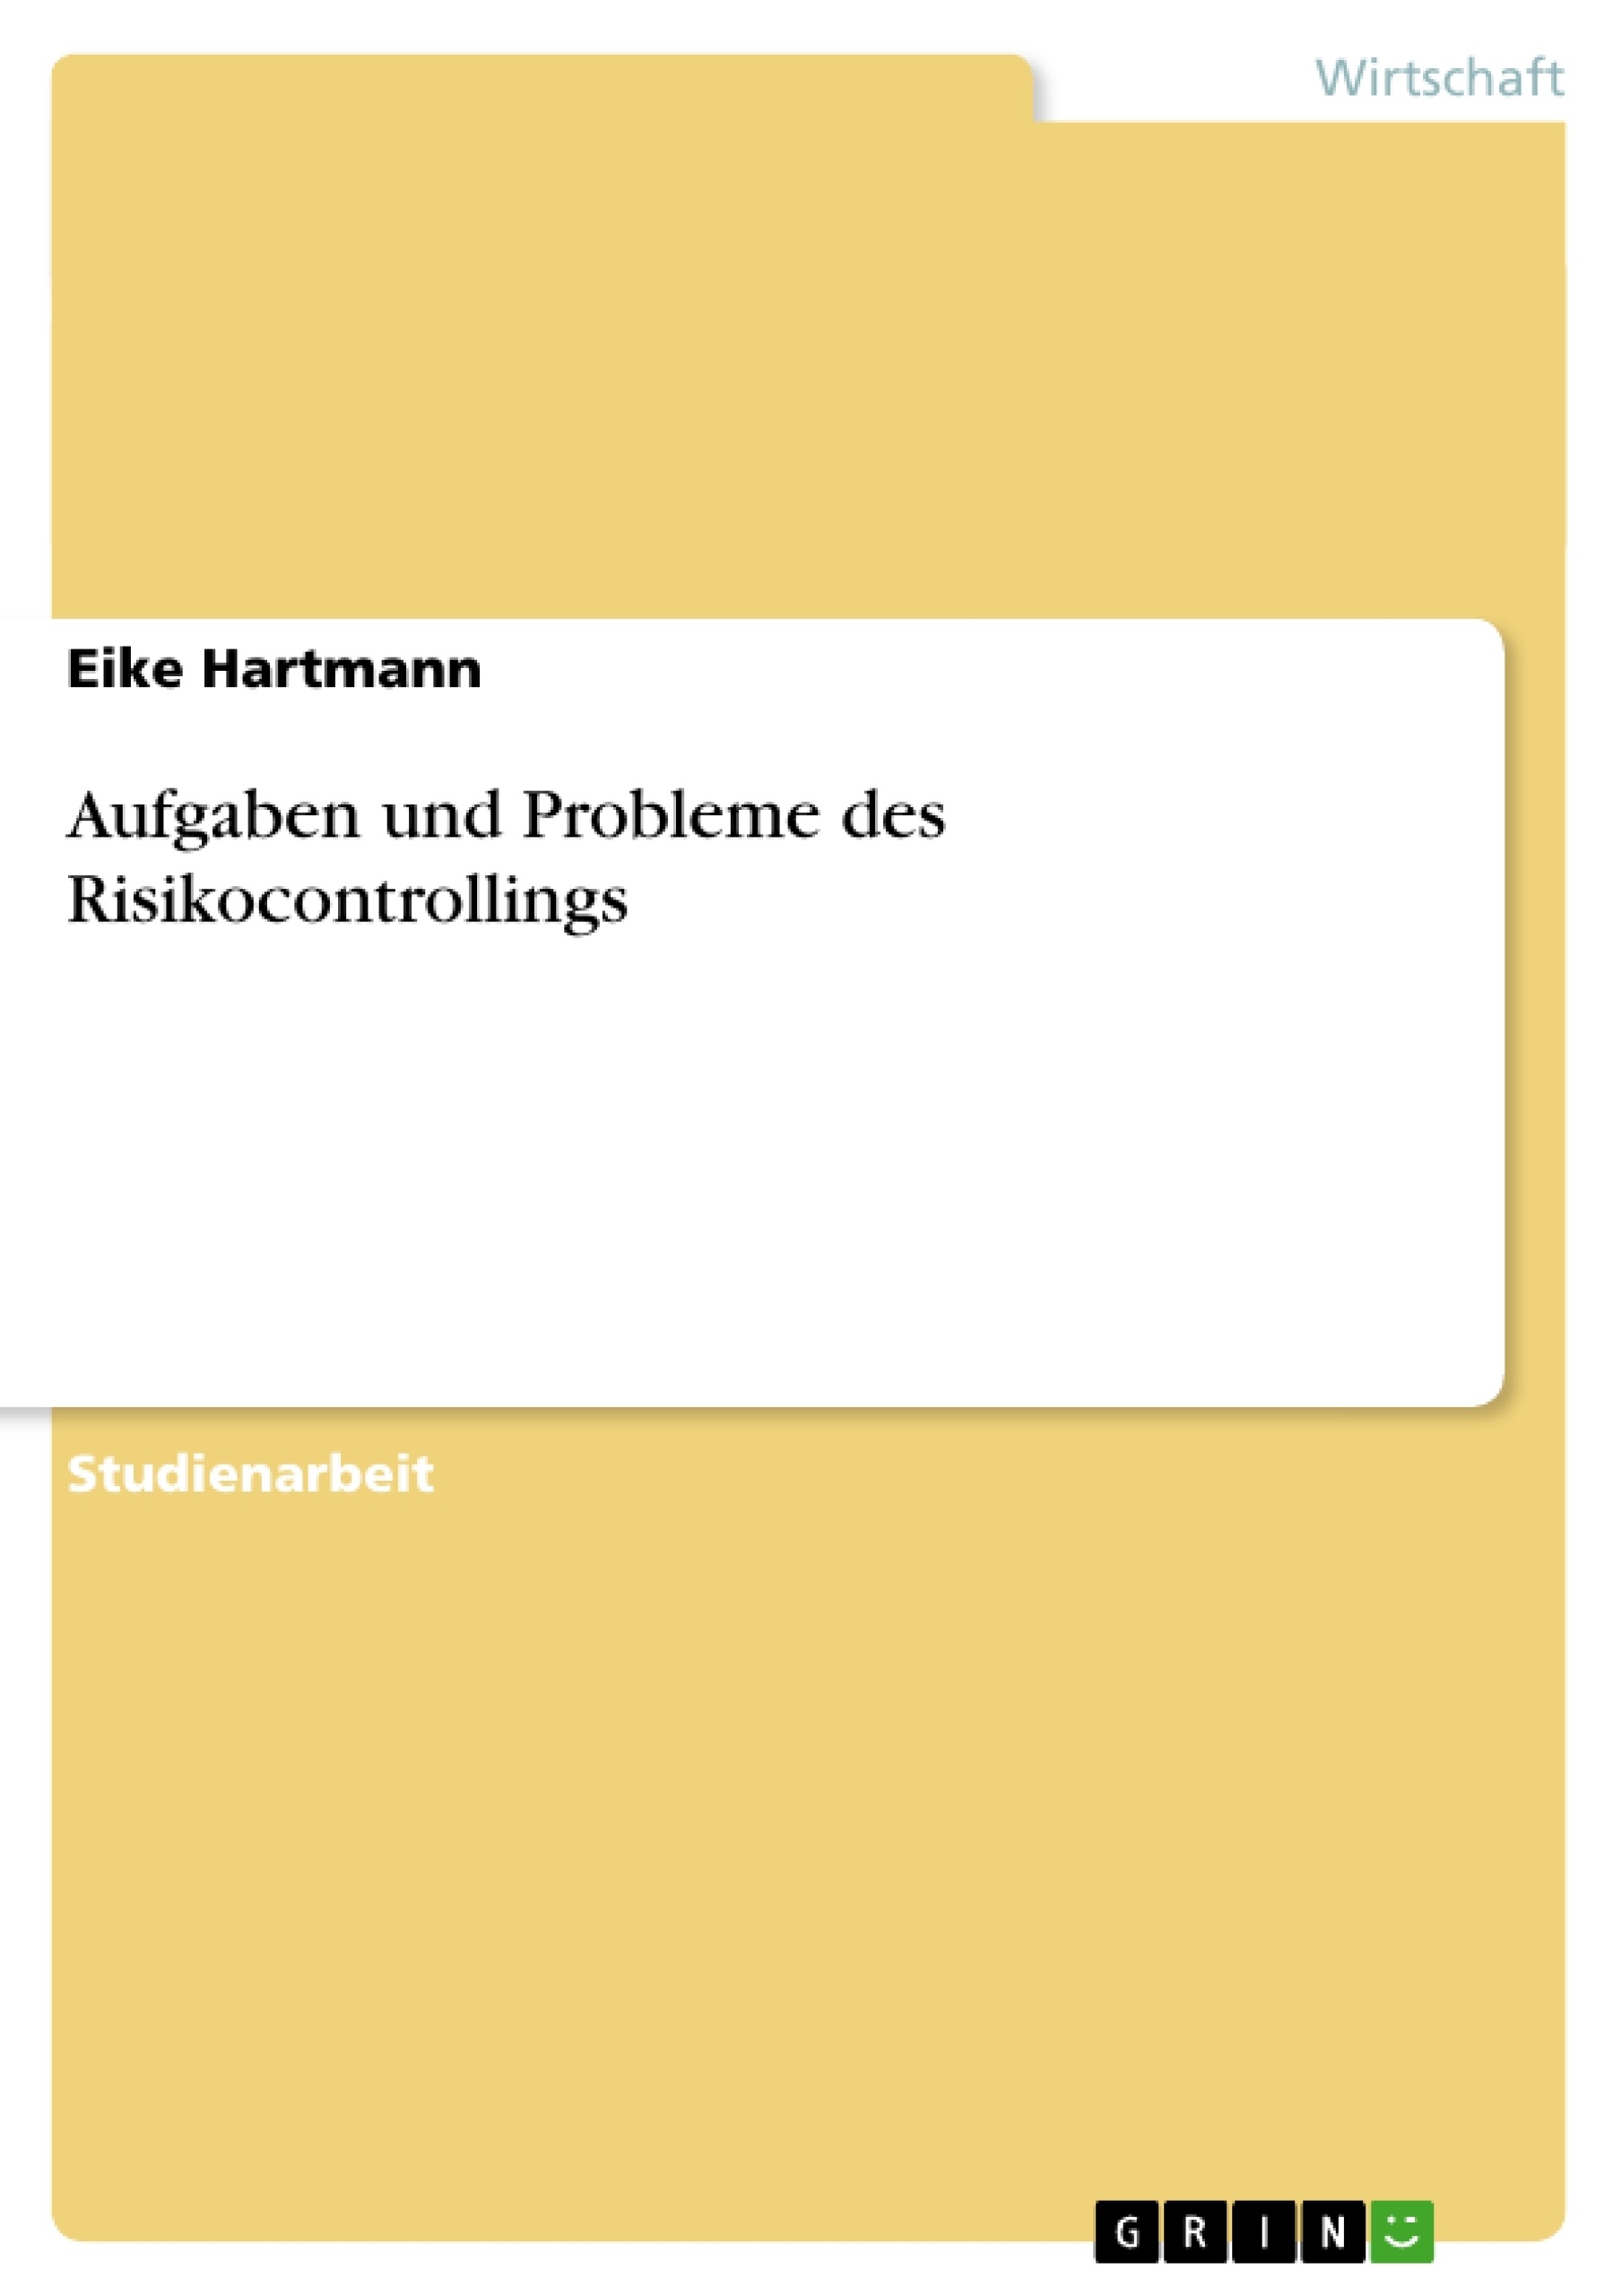 Titre: Aufgaben und Probleme des Risikocontrollings